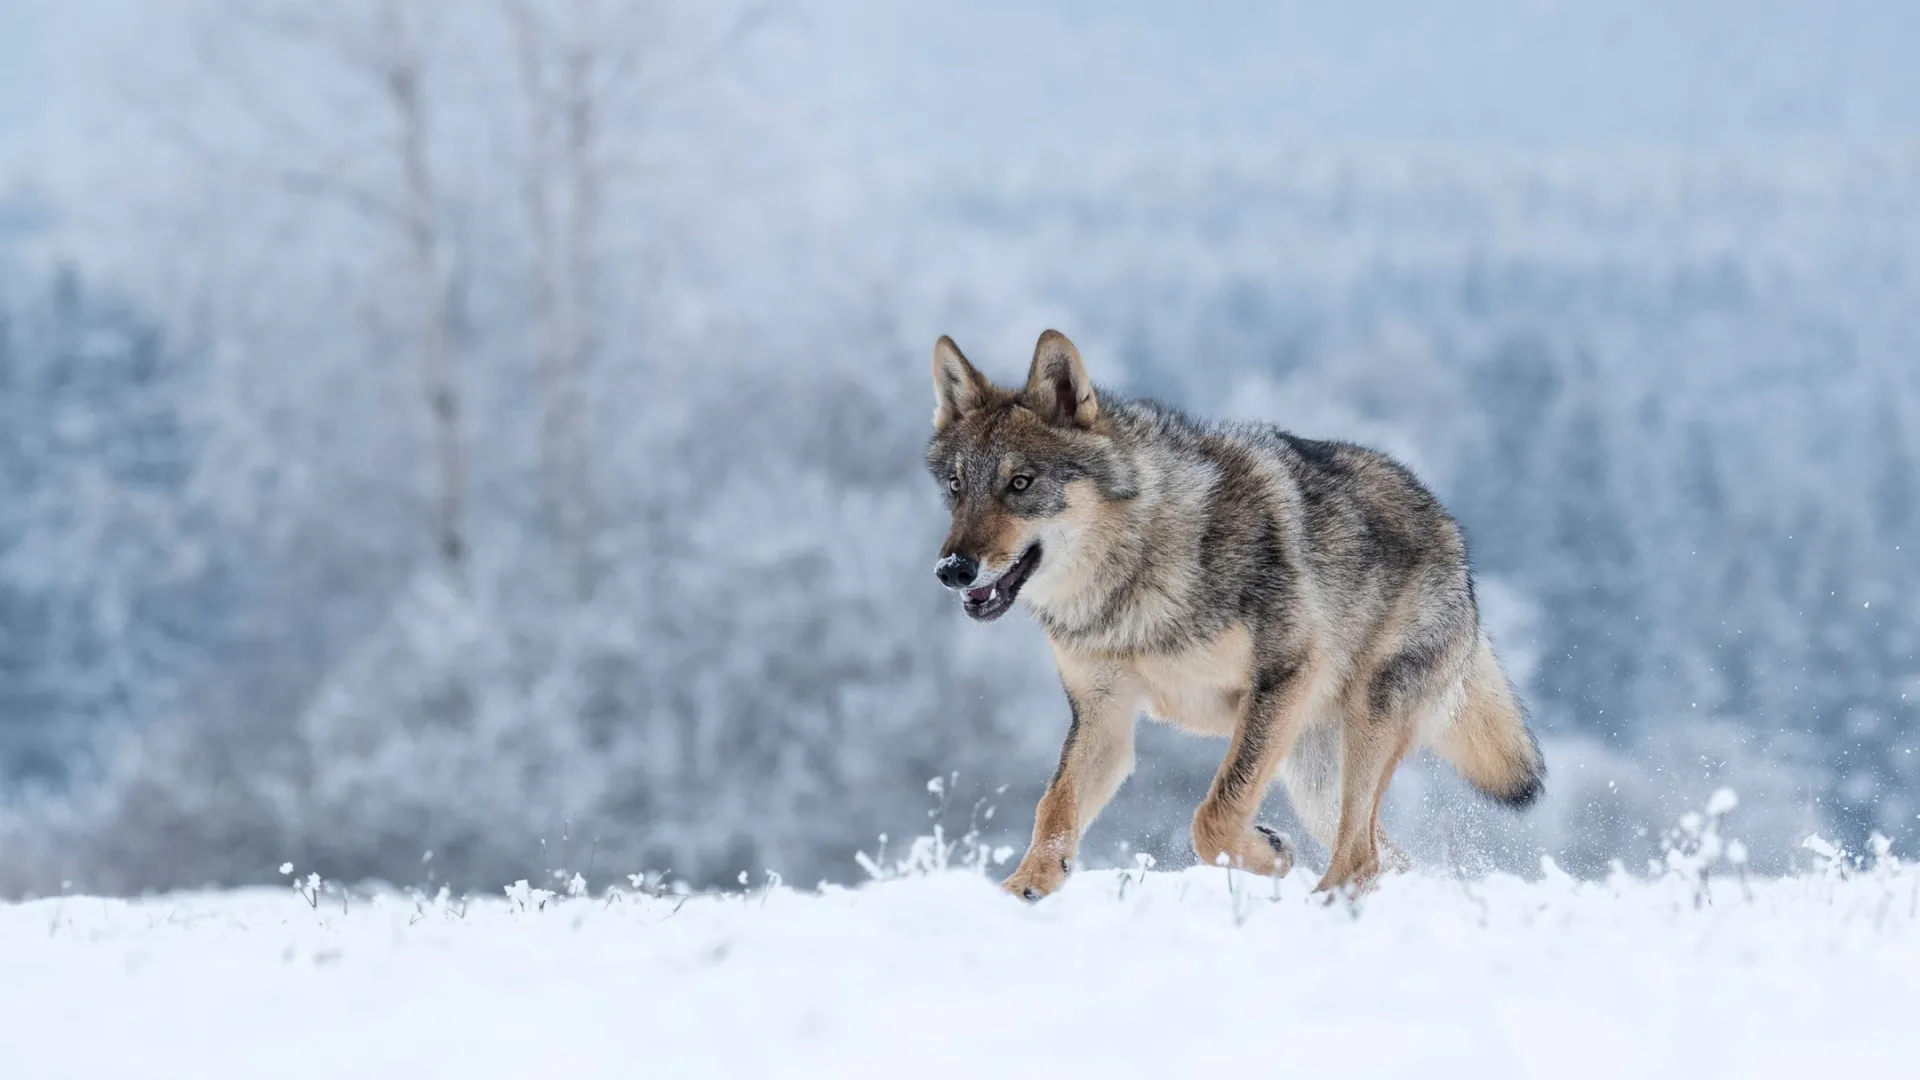 На Ямале обитают три вида волков - полярный, сибирский и тундровый. Фото: Vlada Cech / shutterstock.com / Fotodom